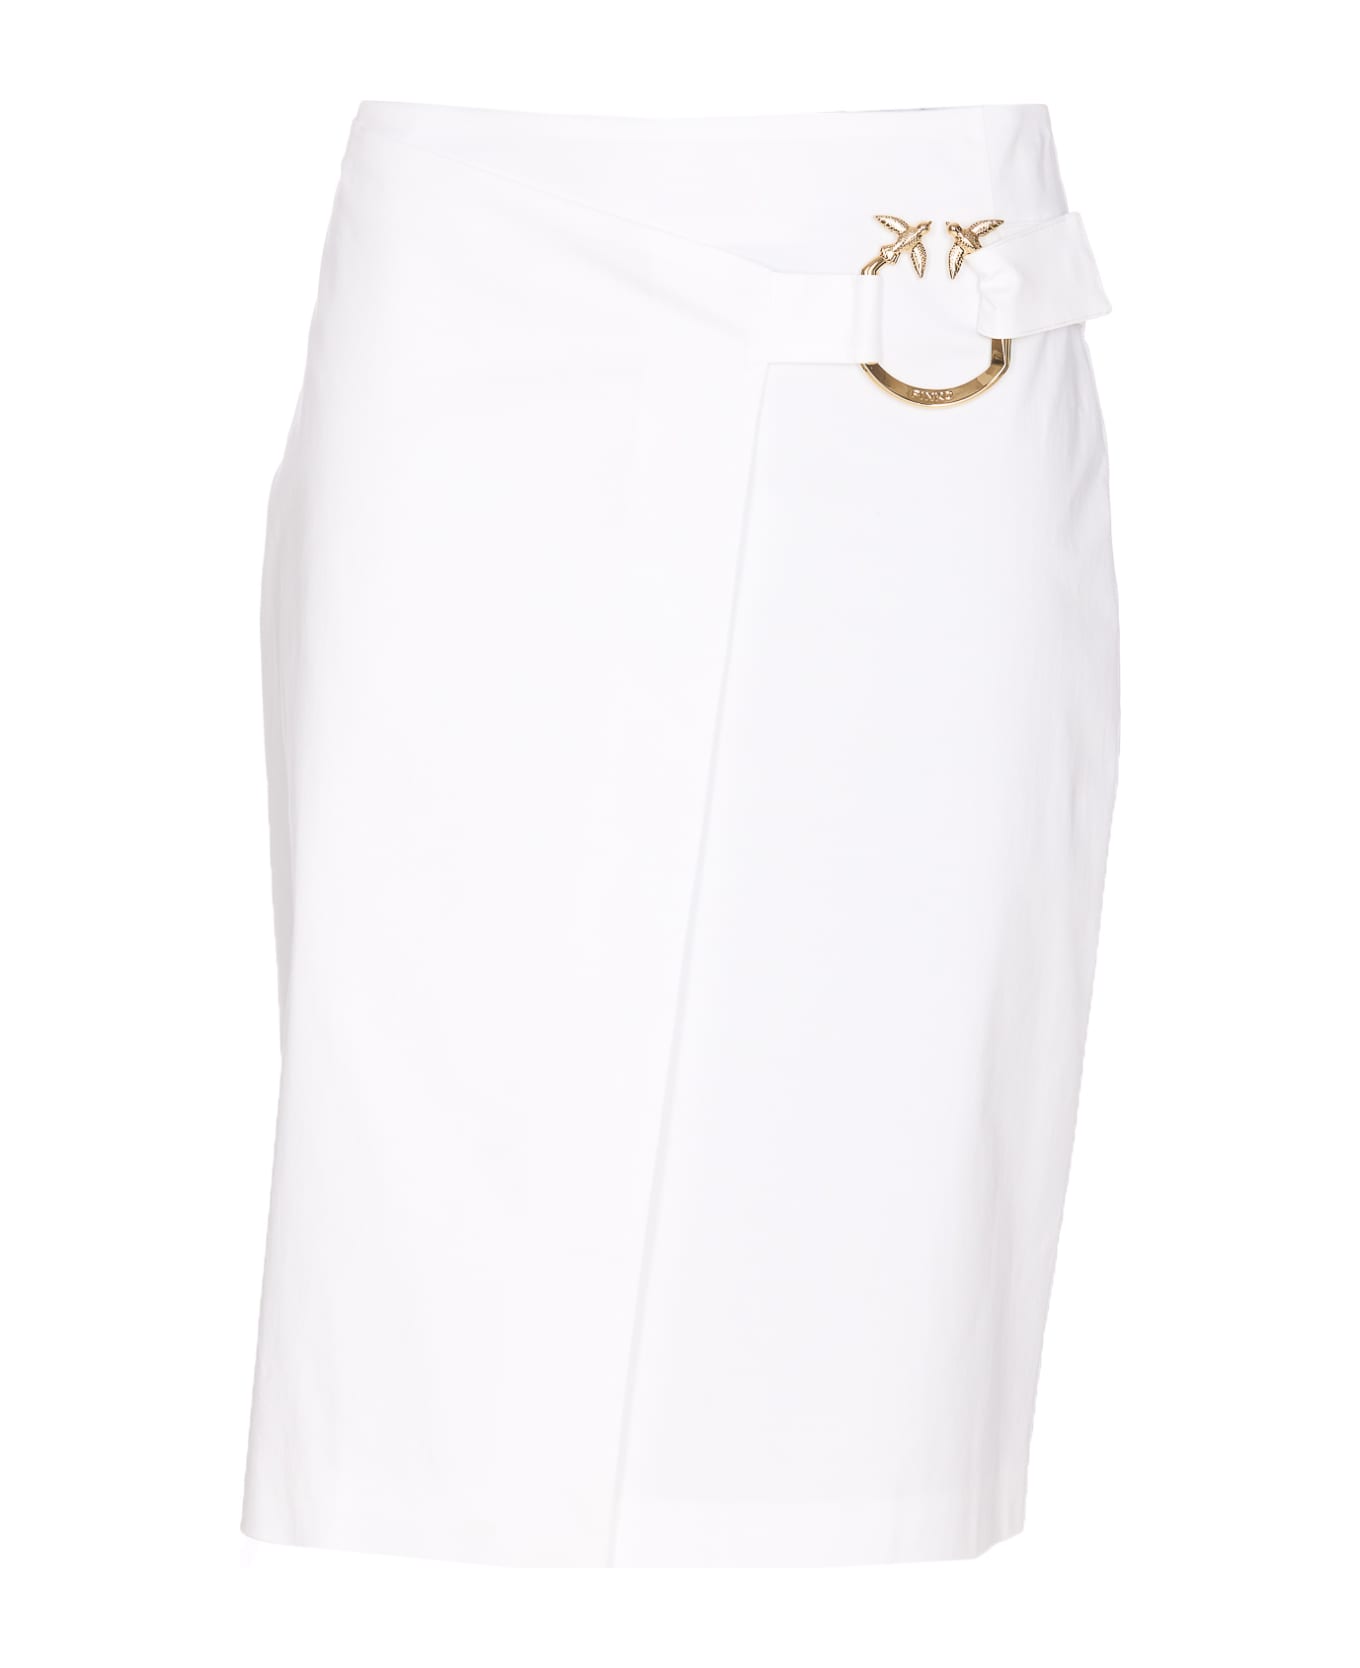 Pinko Piercing Buckle Longuette Skirt - White